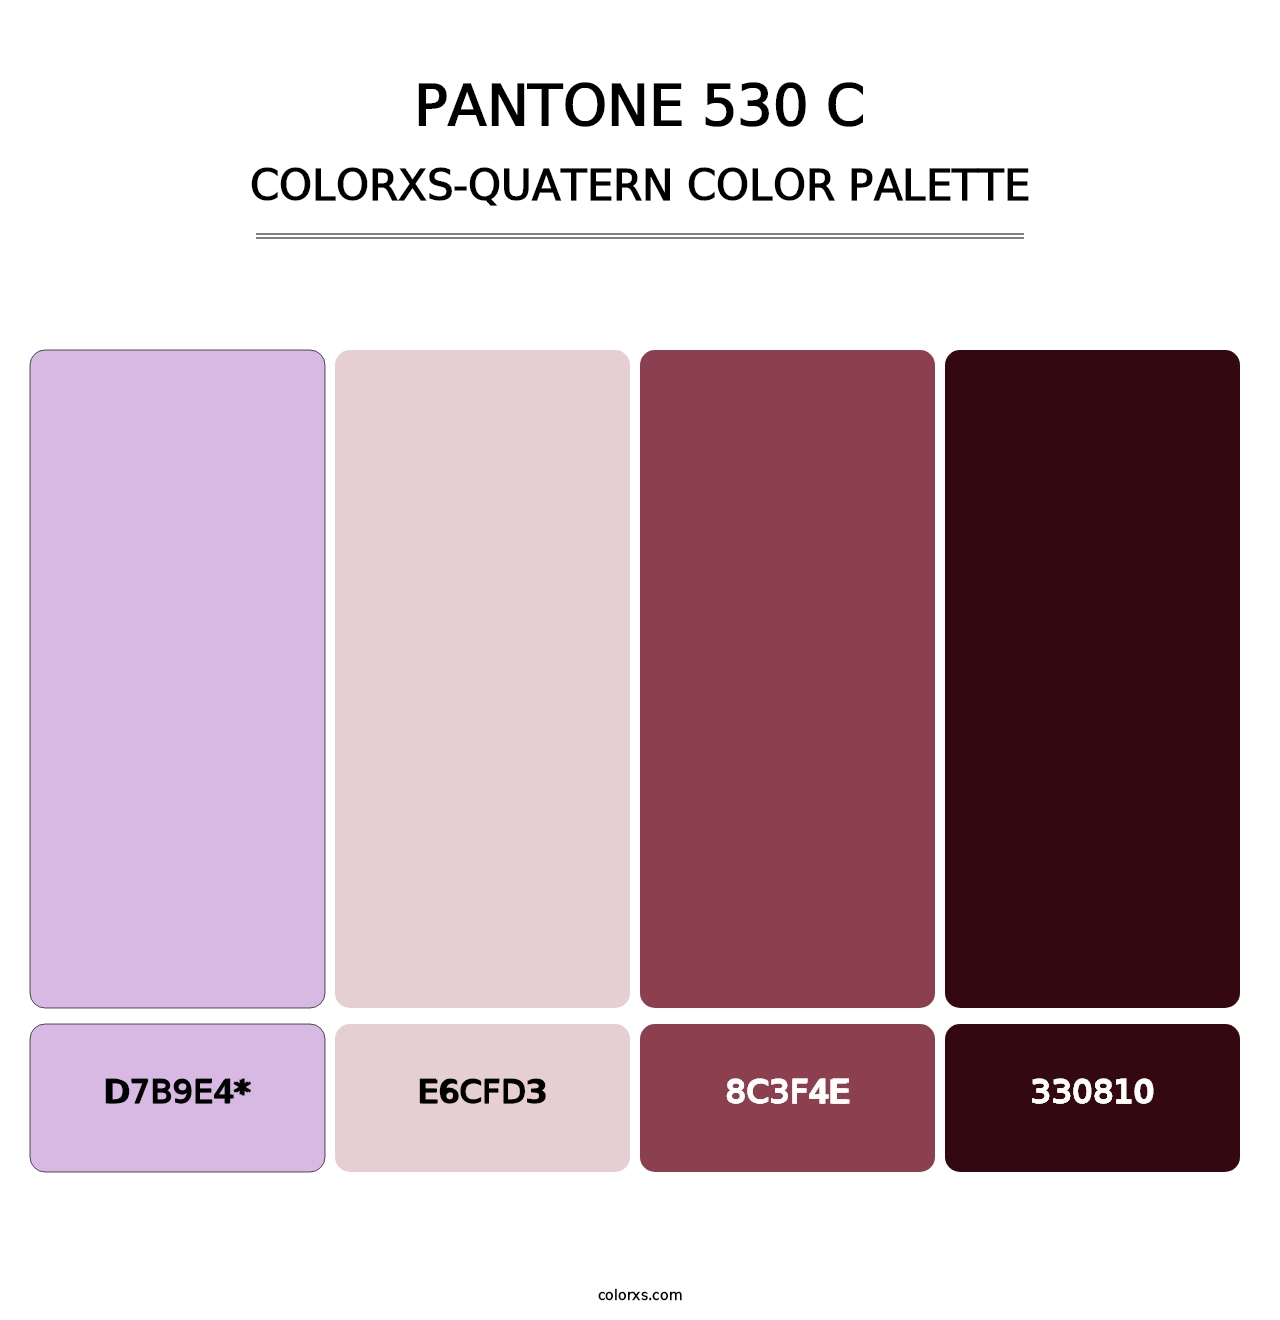 PANTONE 530 C - Colorxs Quatern Palette